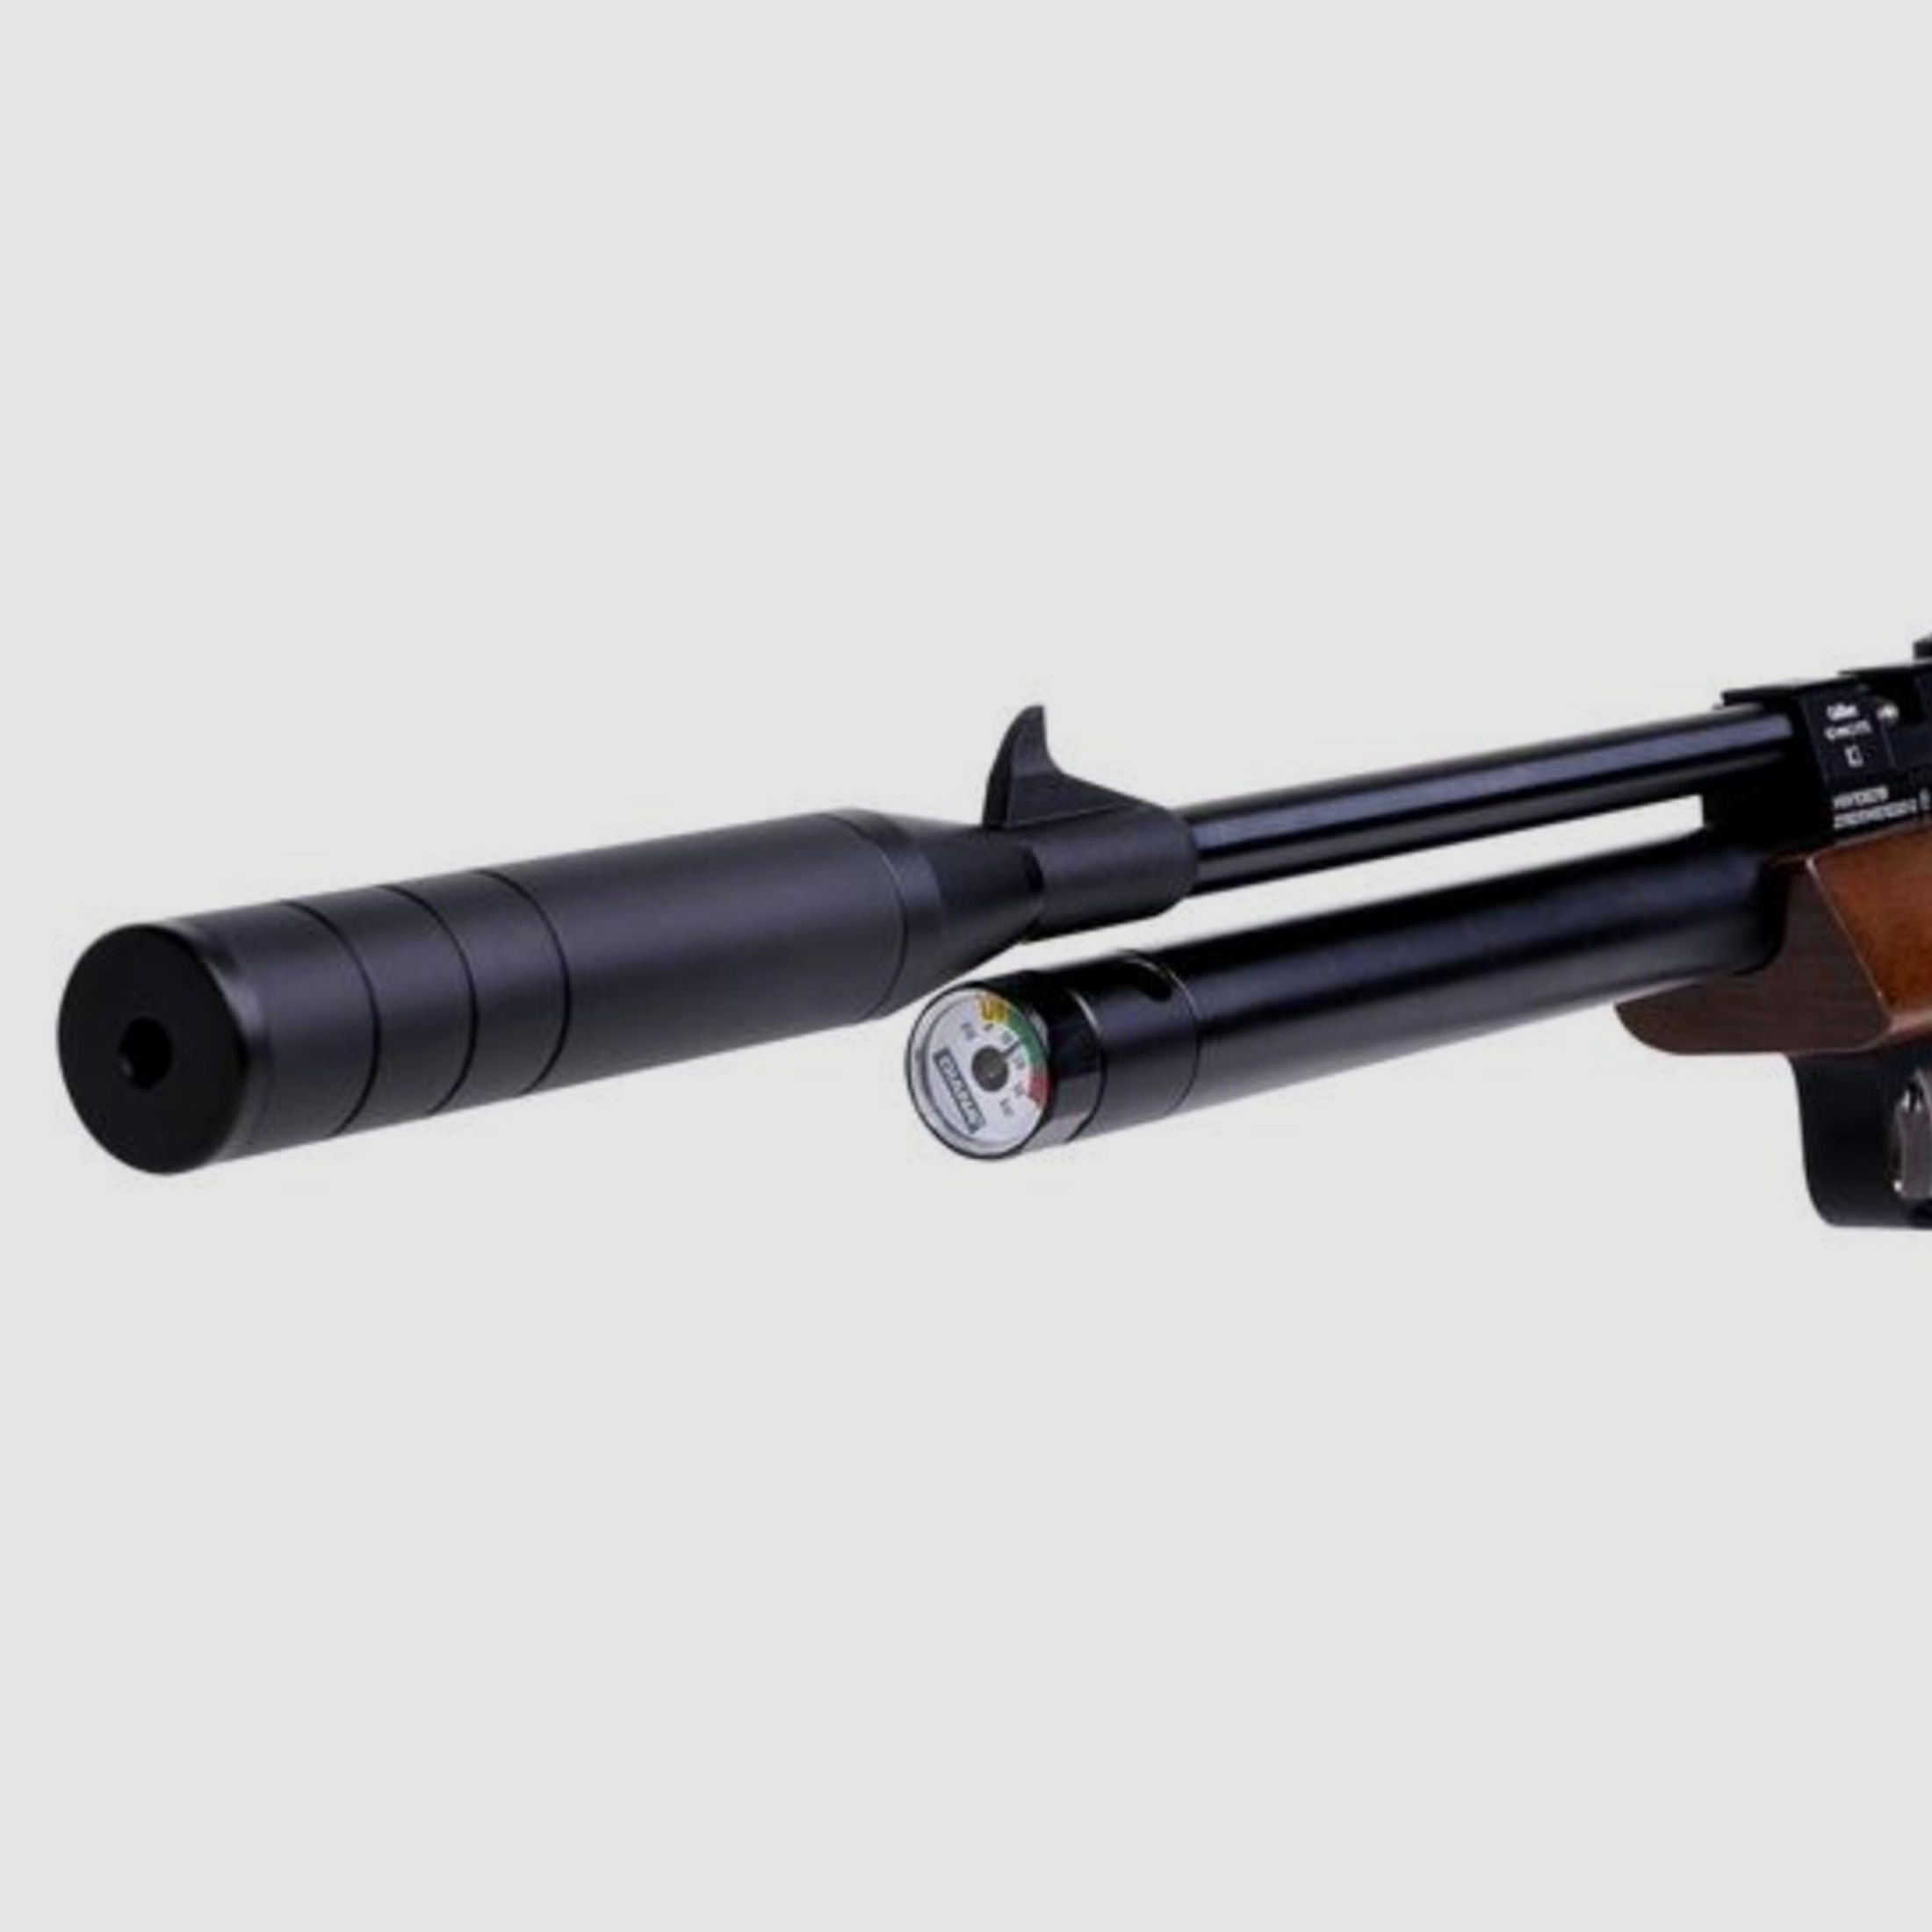 Diana 1910000 Bandit Pressluftpistole 4,5mm 9 Schuss Holz Matchgriff